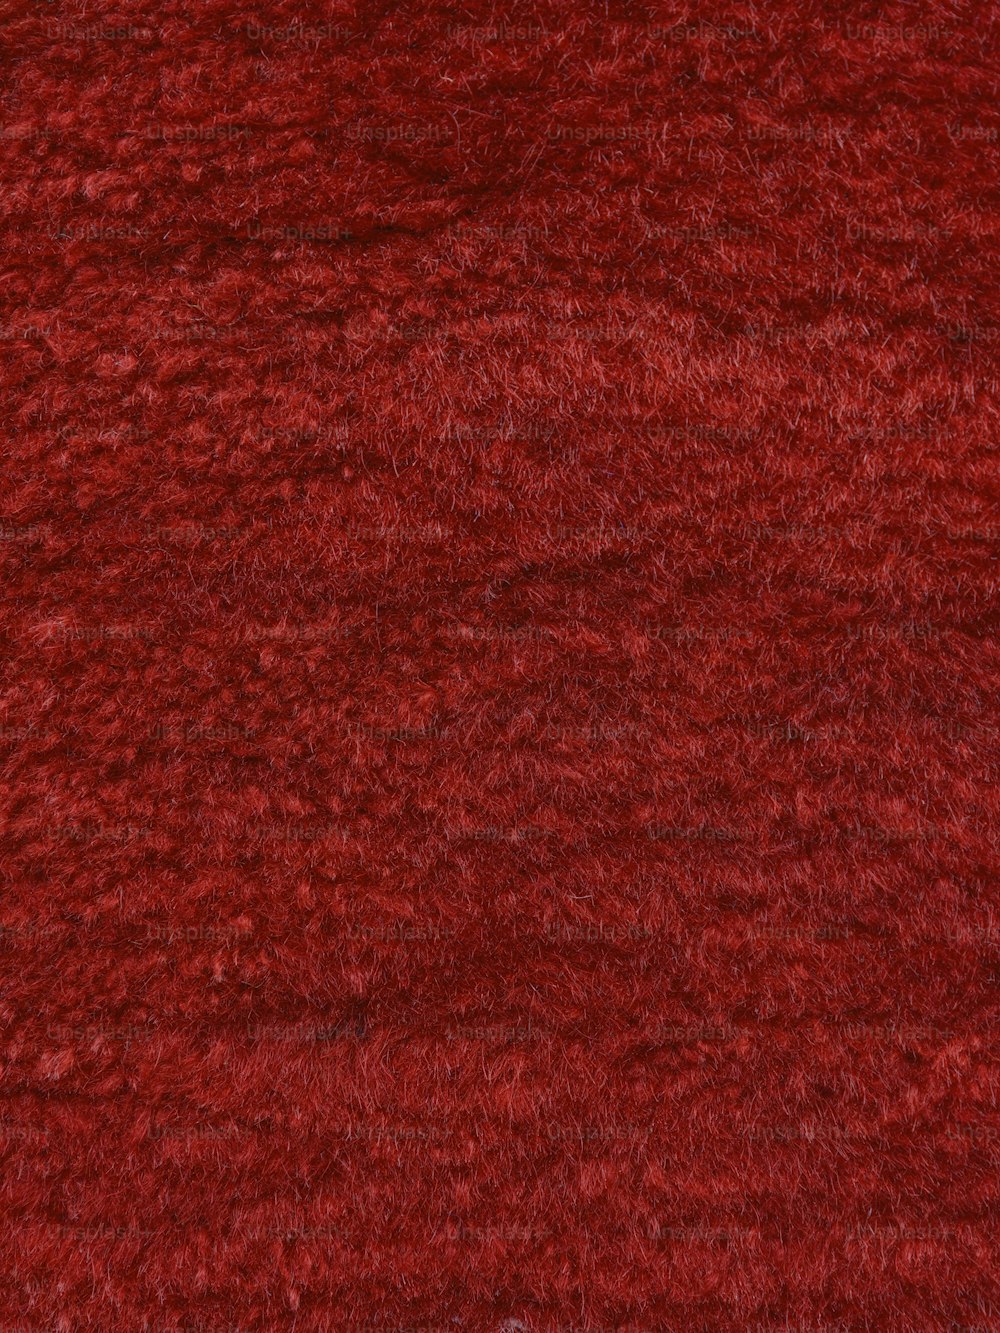 eine Nahaufnahme eines roten Teppichs